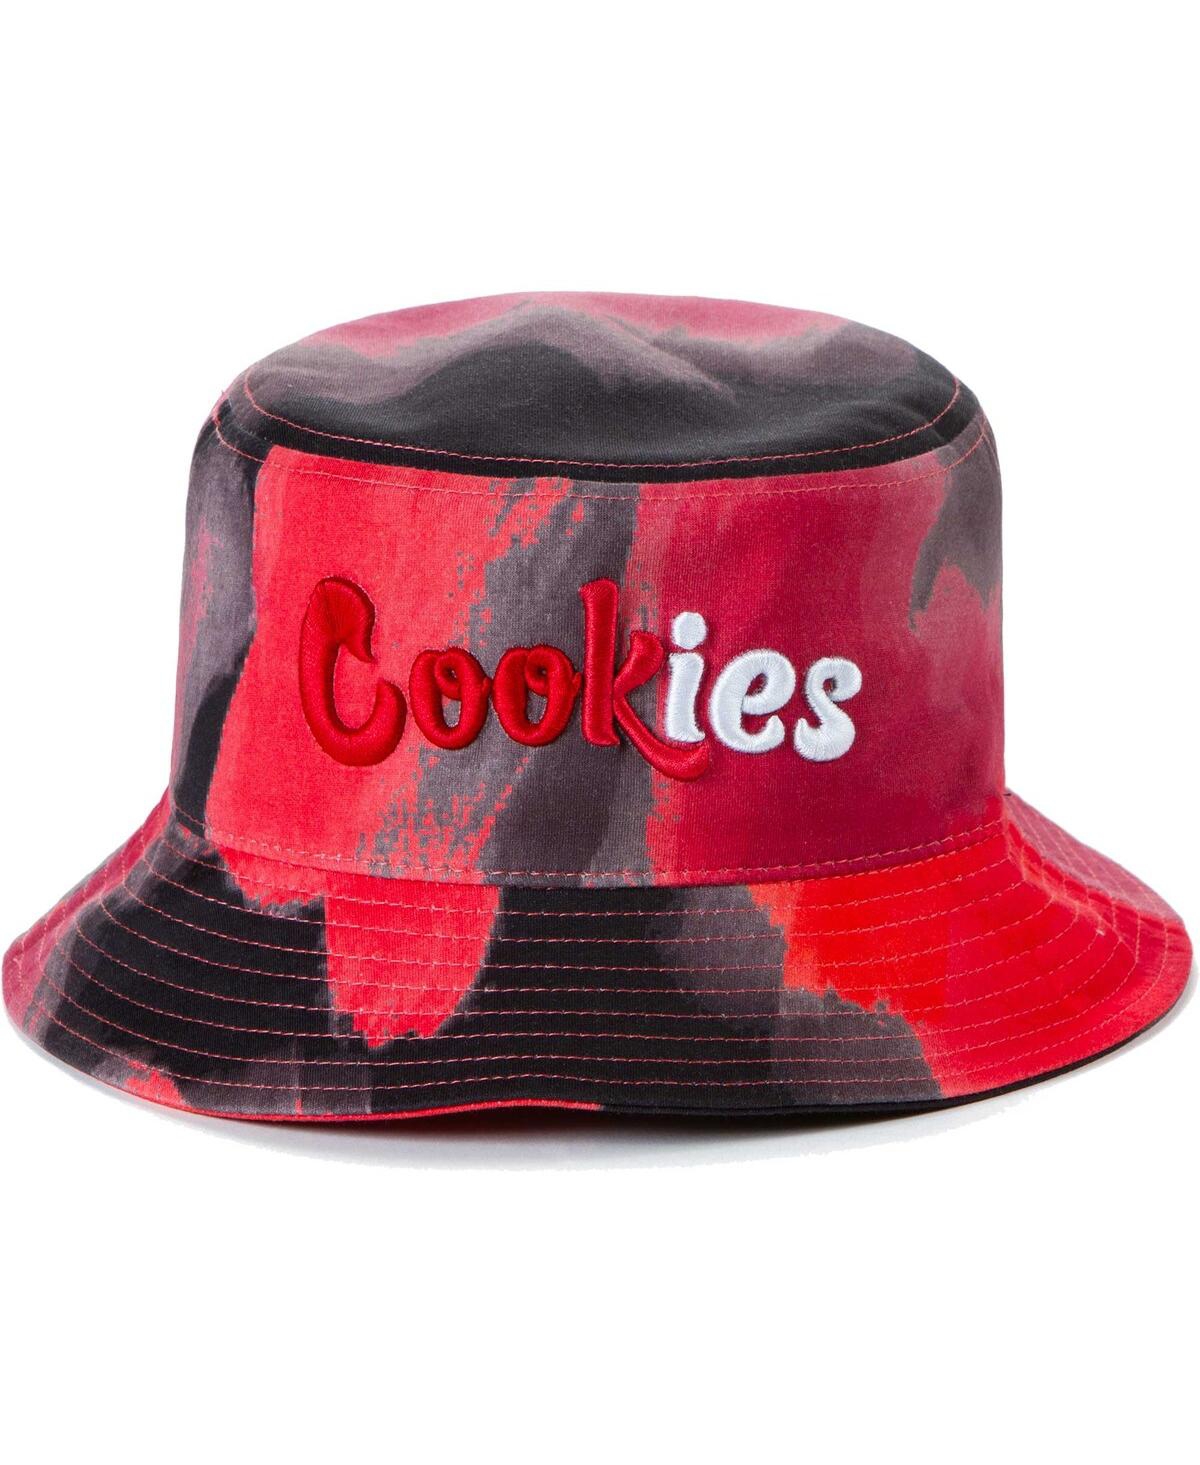 Men's Cookies Clothing Black Forum All Over Bucket Hat - Black